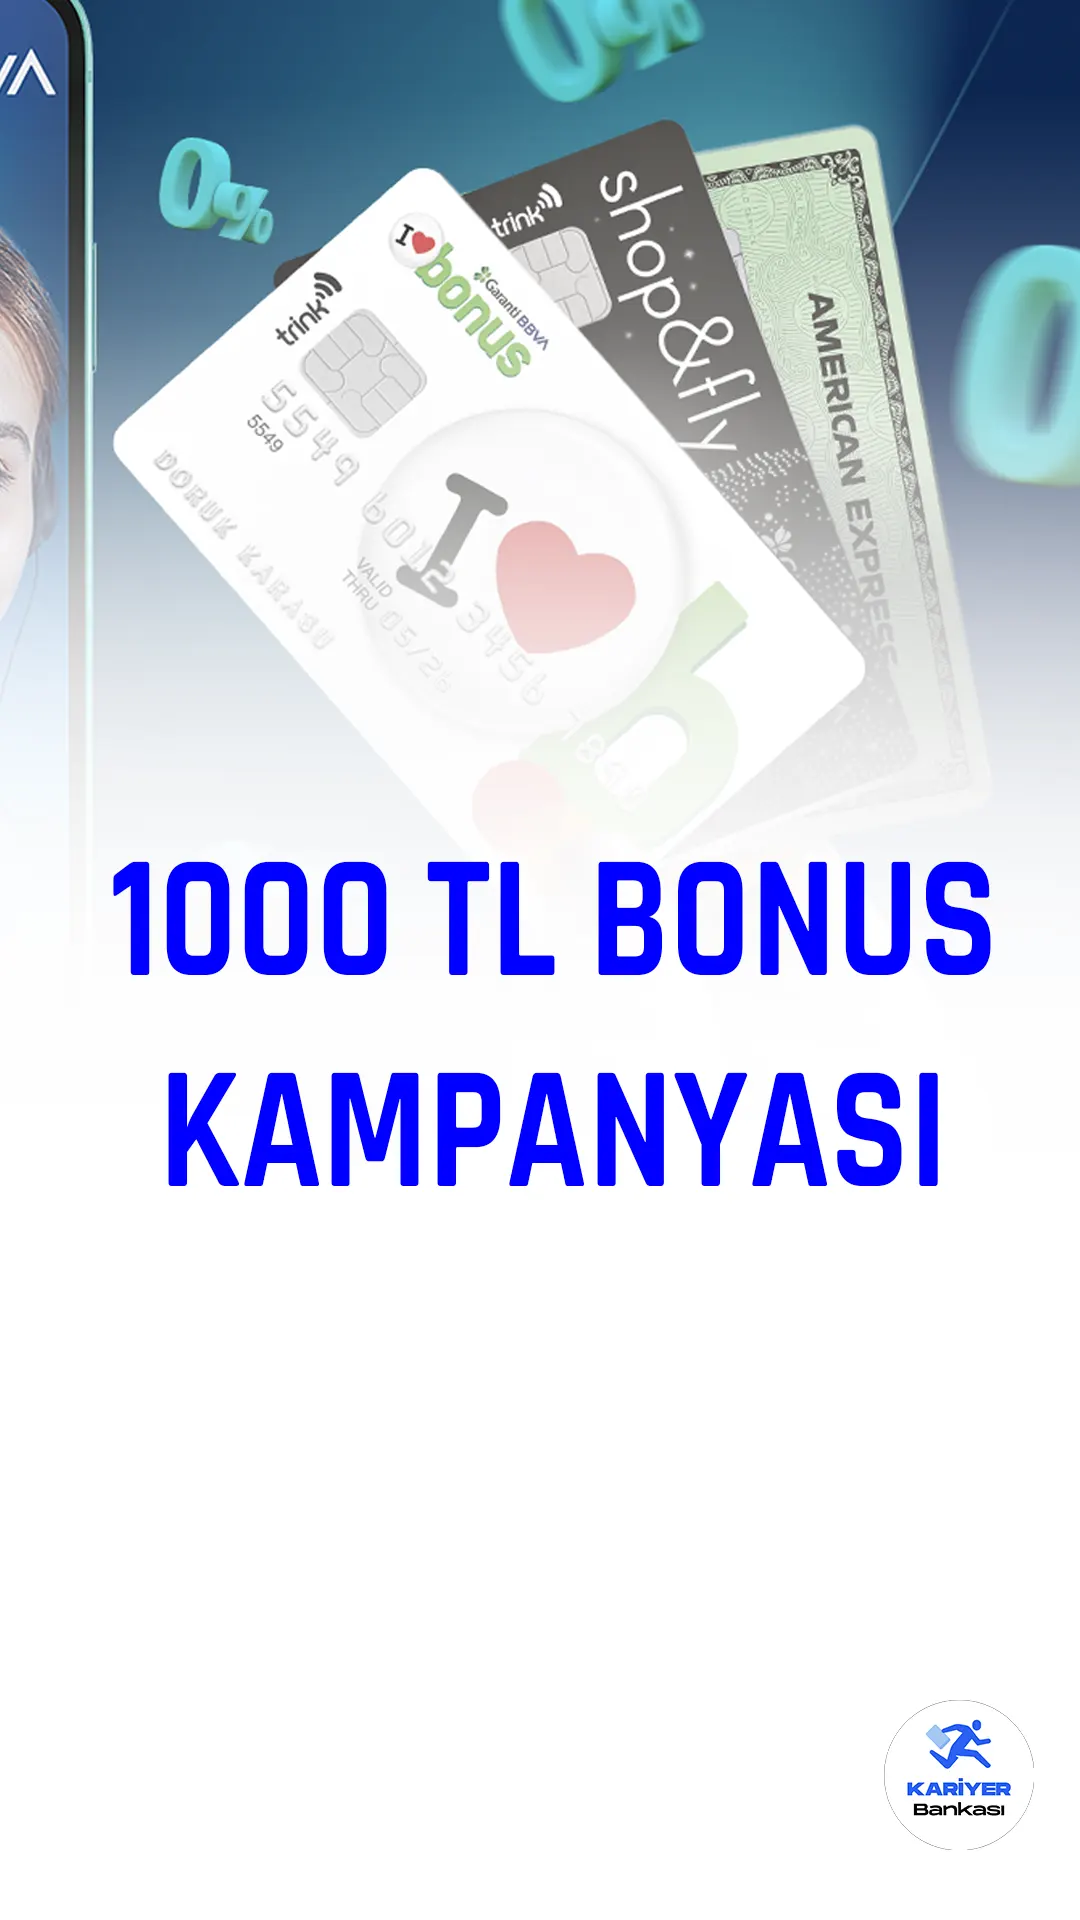 Garanti BBVA 1000 TL bonus kampanyası başvuruları 28 Şubat'ta sona erecek.